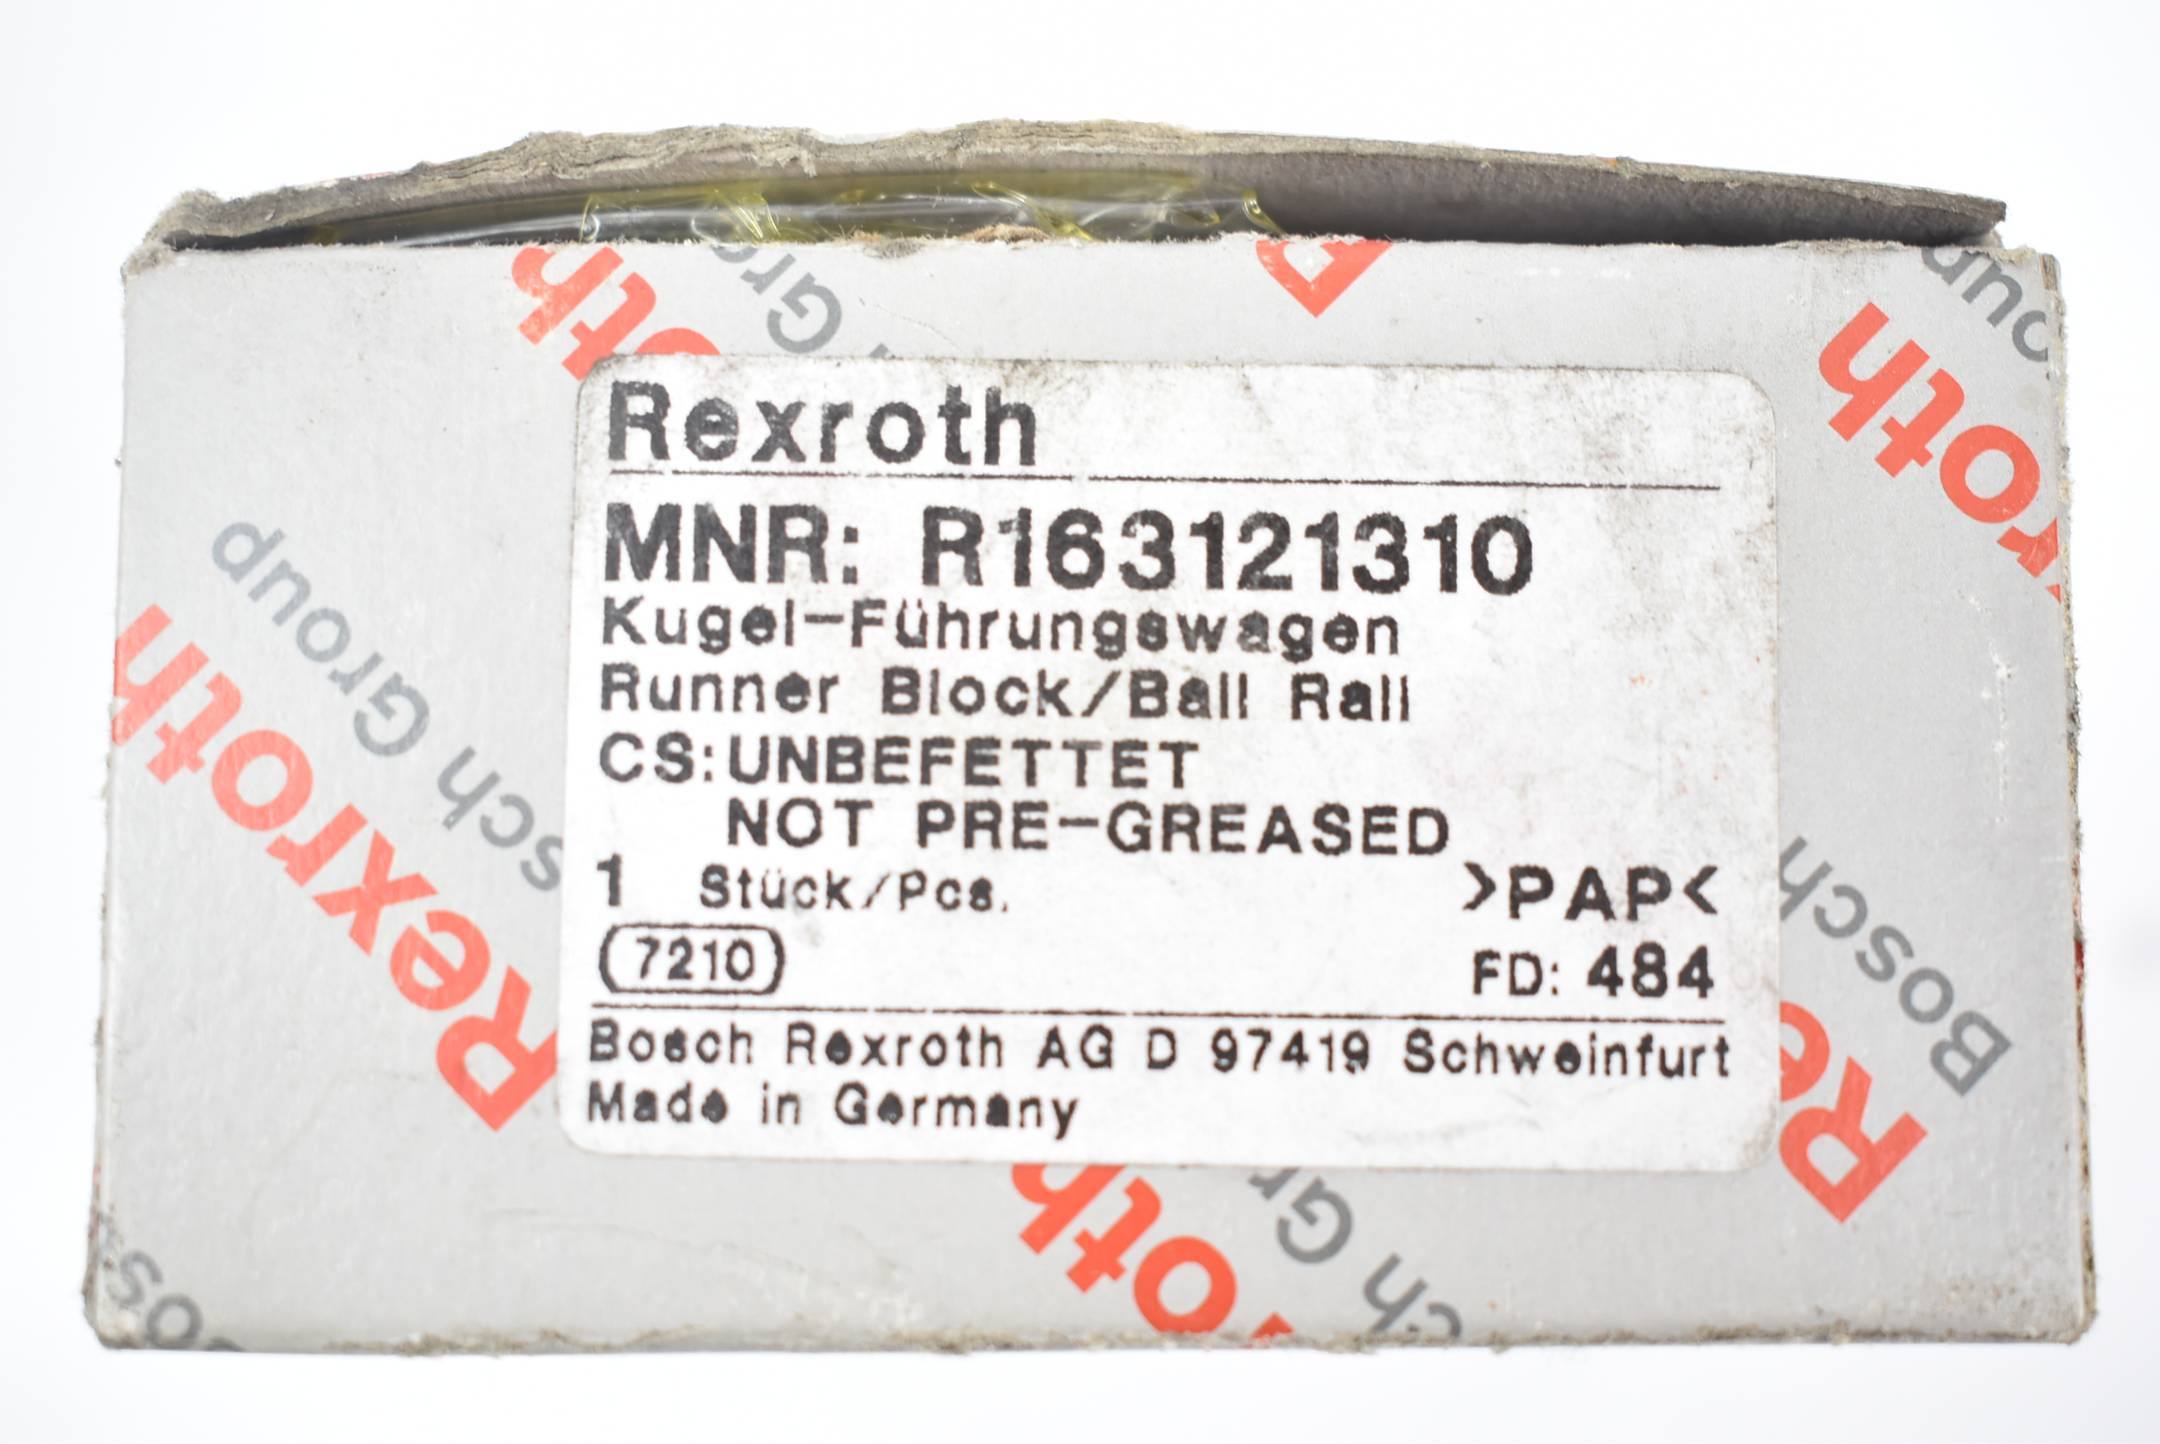 Rexroth Kugel-Führungswagen R163121310